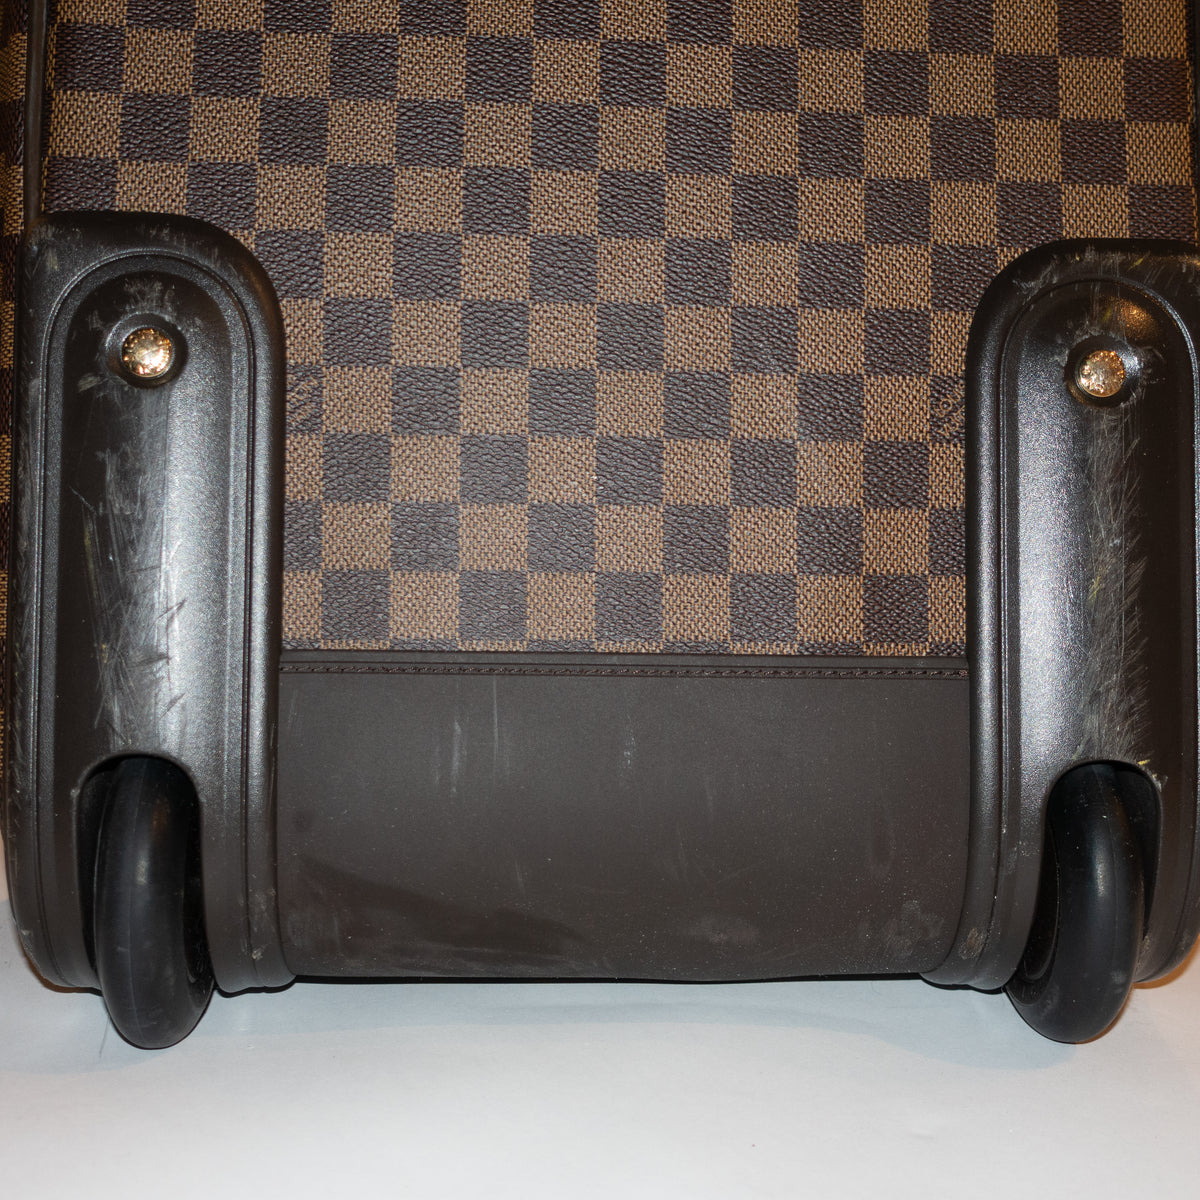 Vintage Louis Vuitton Luggage